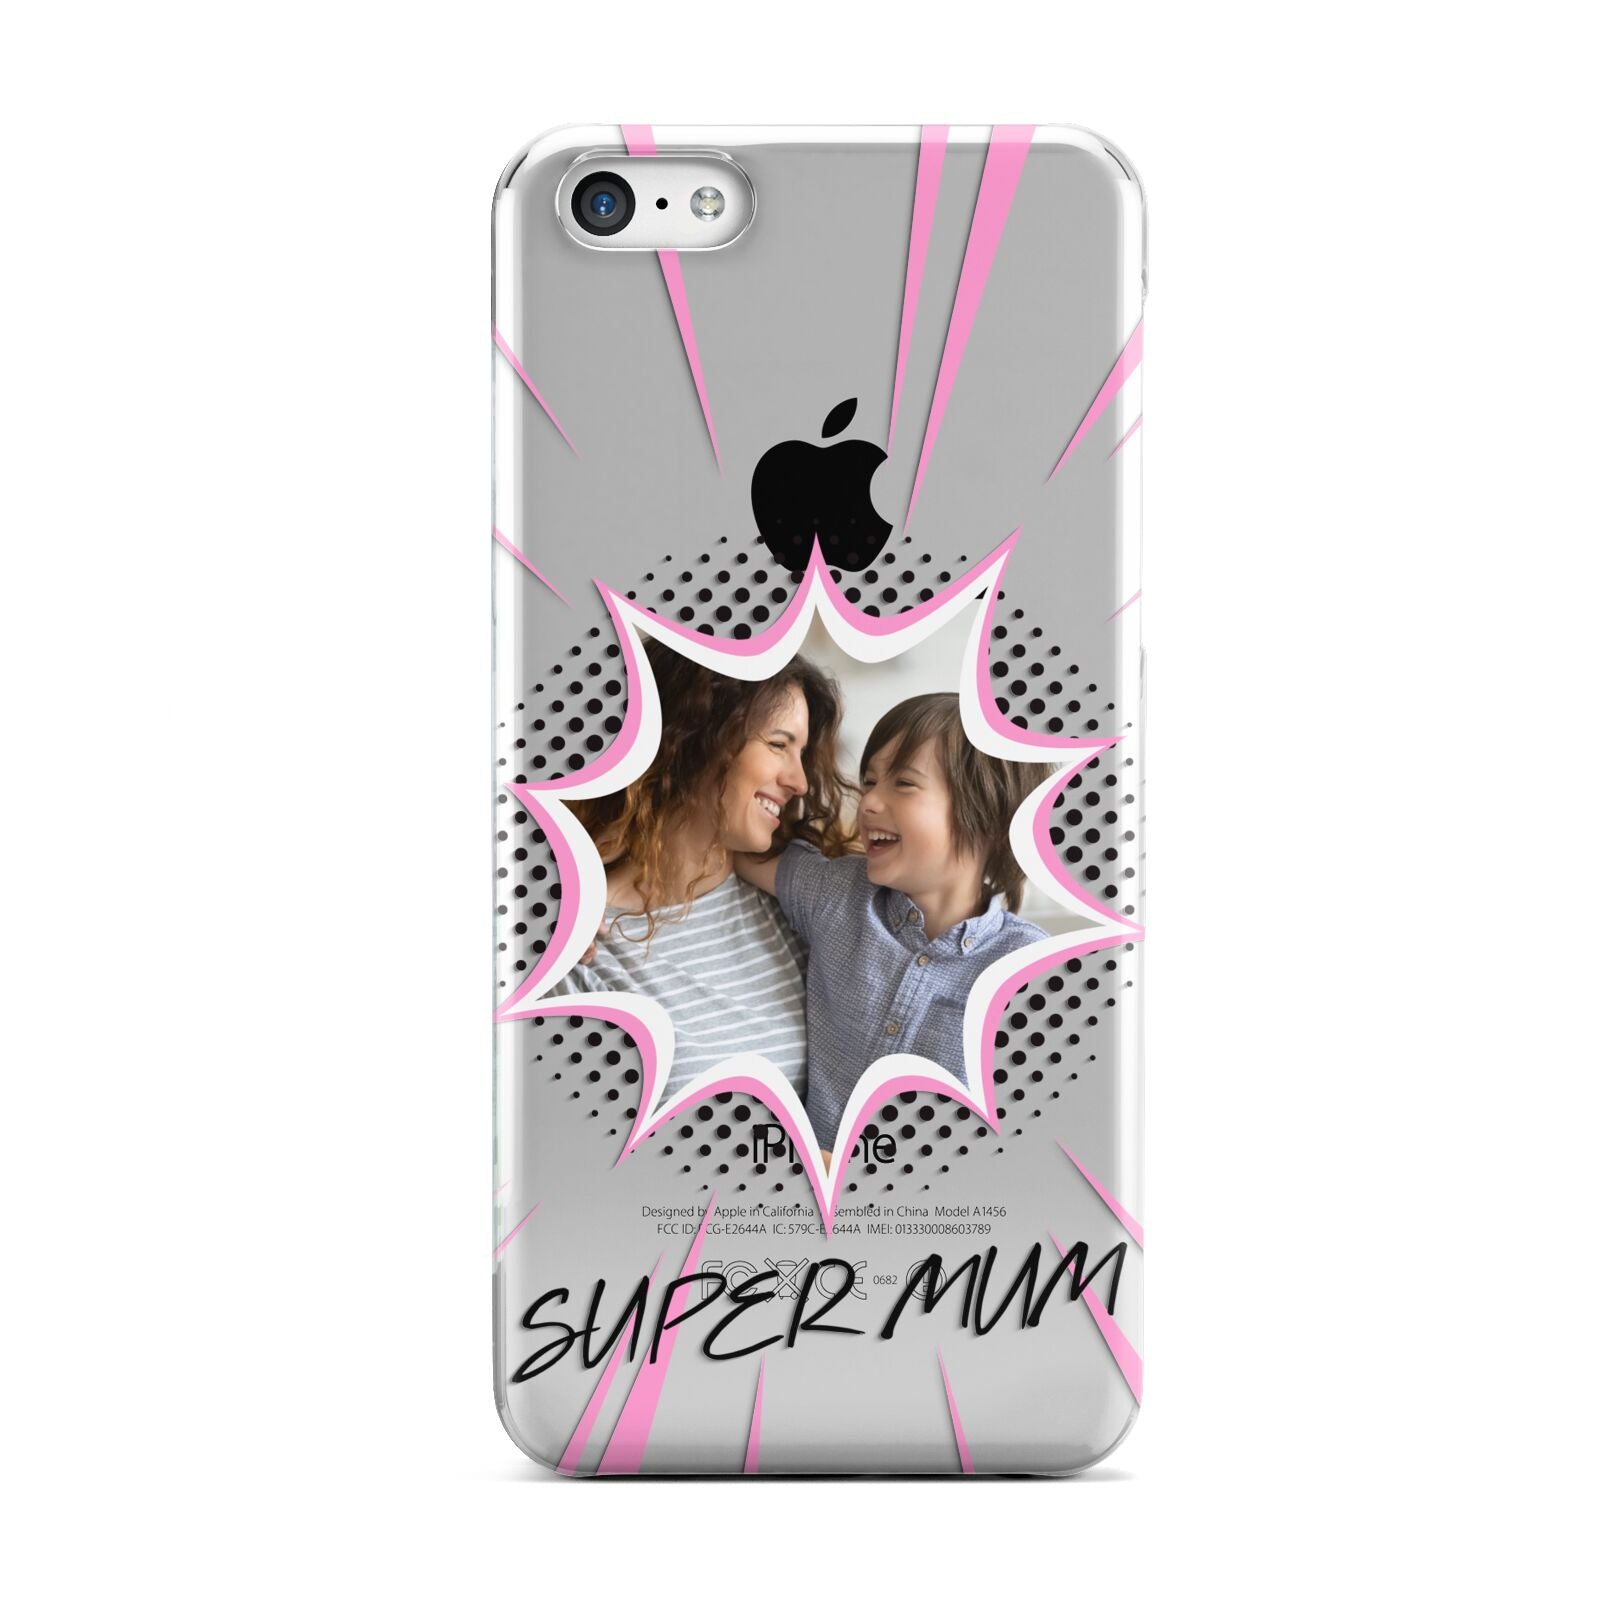 Super Mum Photo Apple iPhone 5c Case